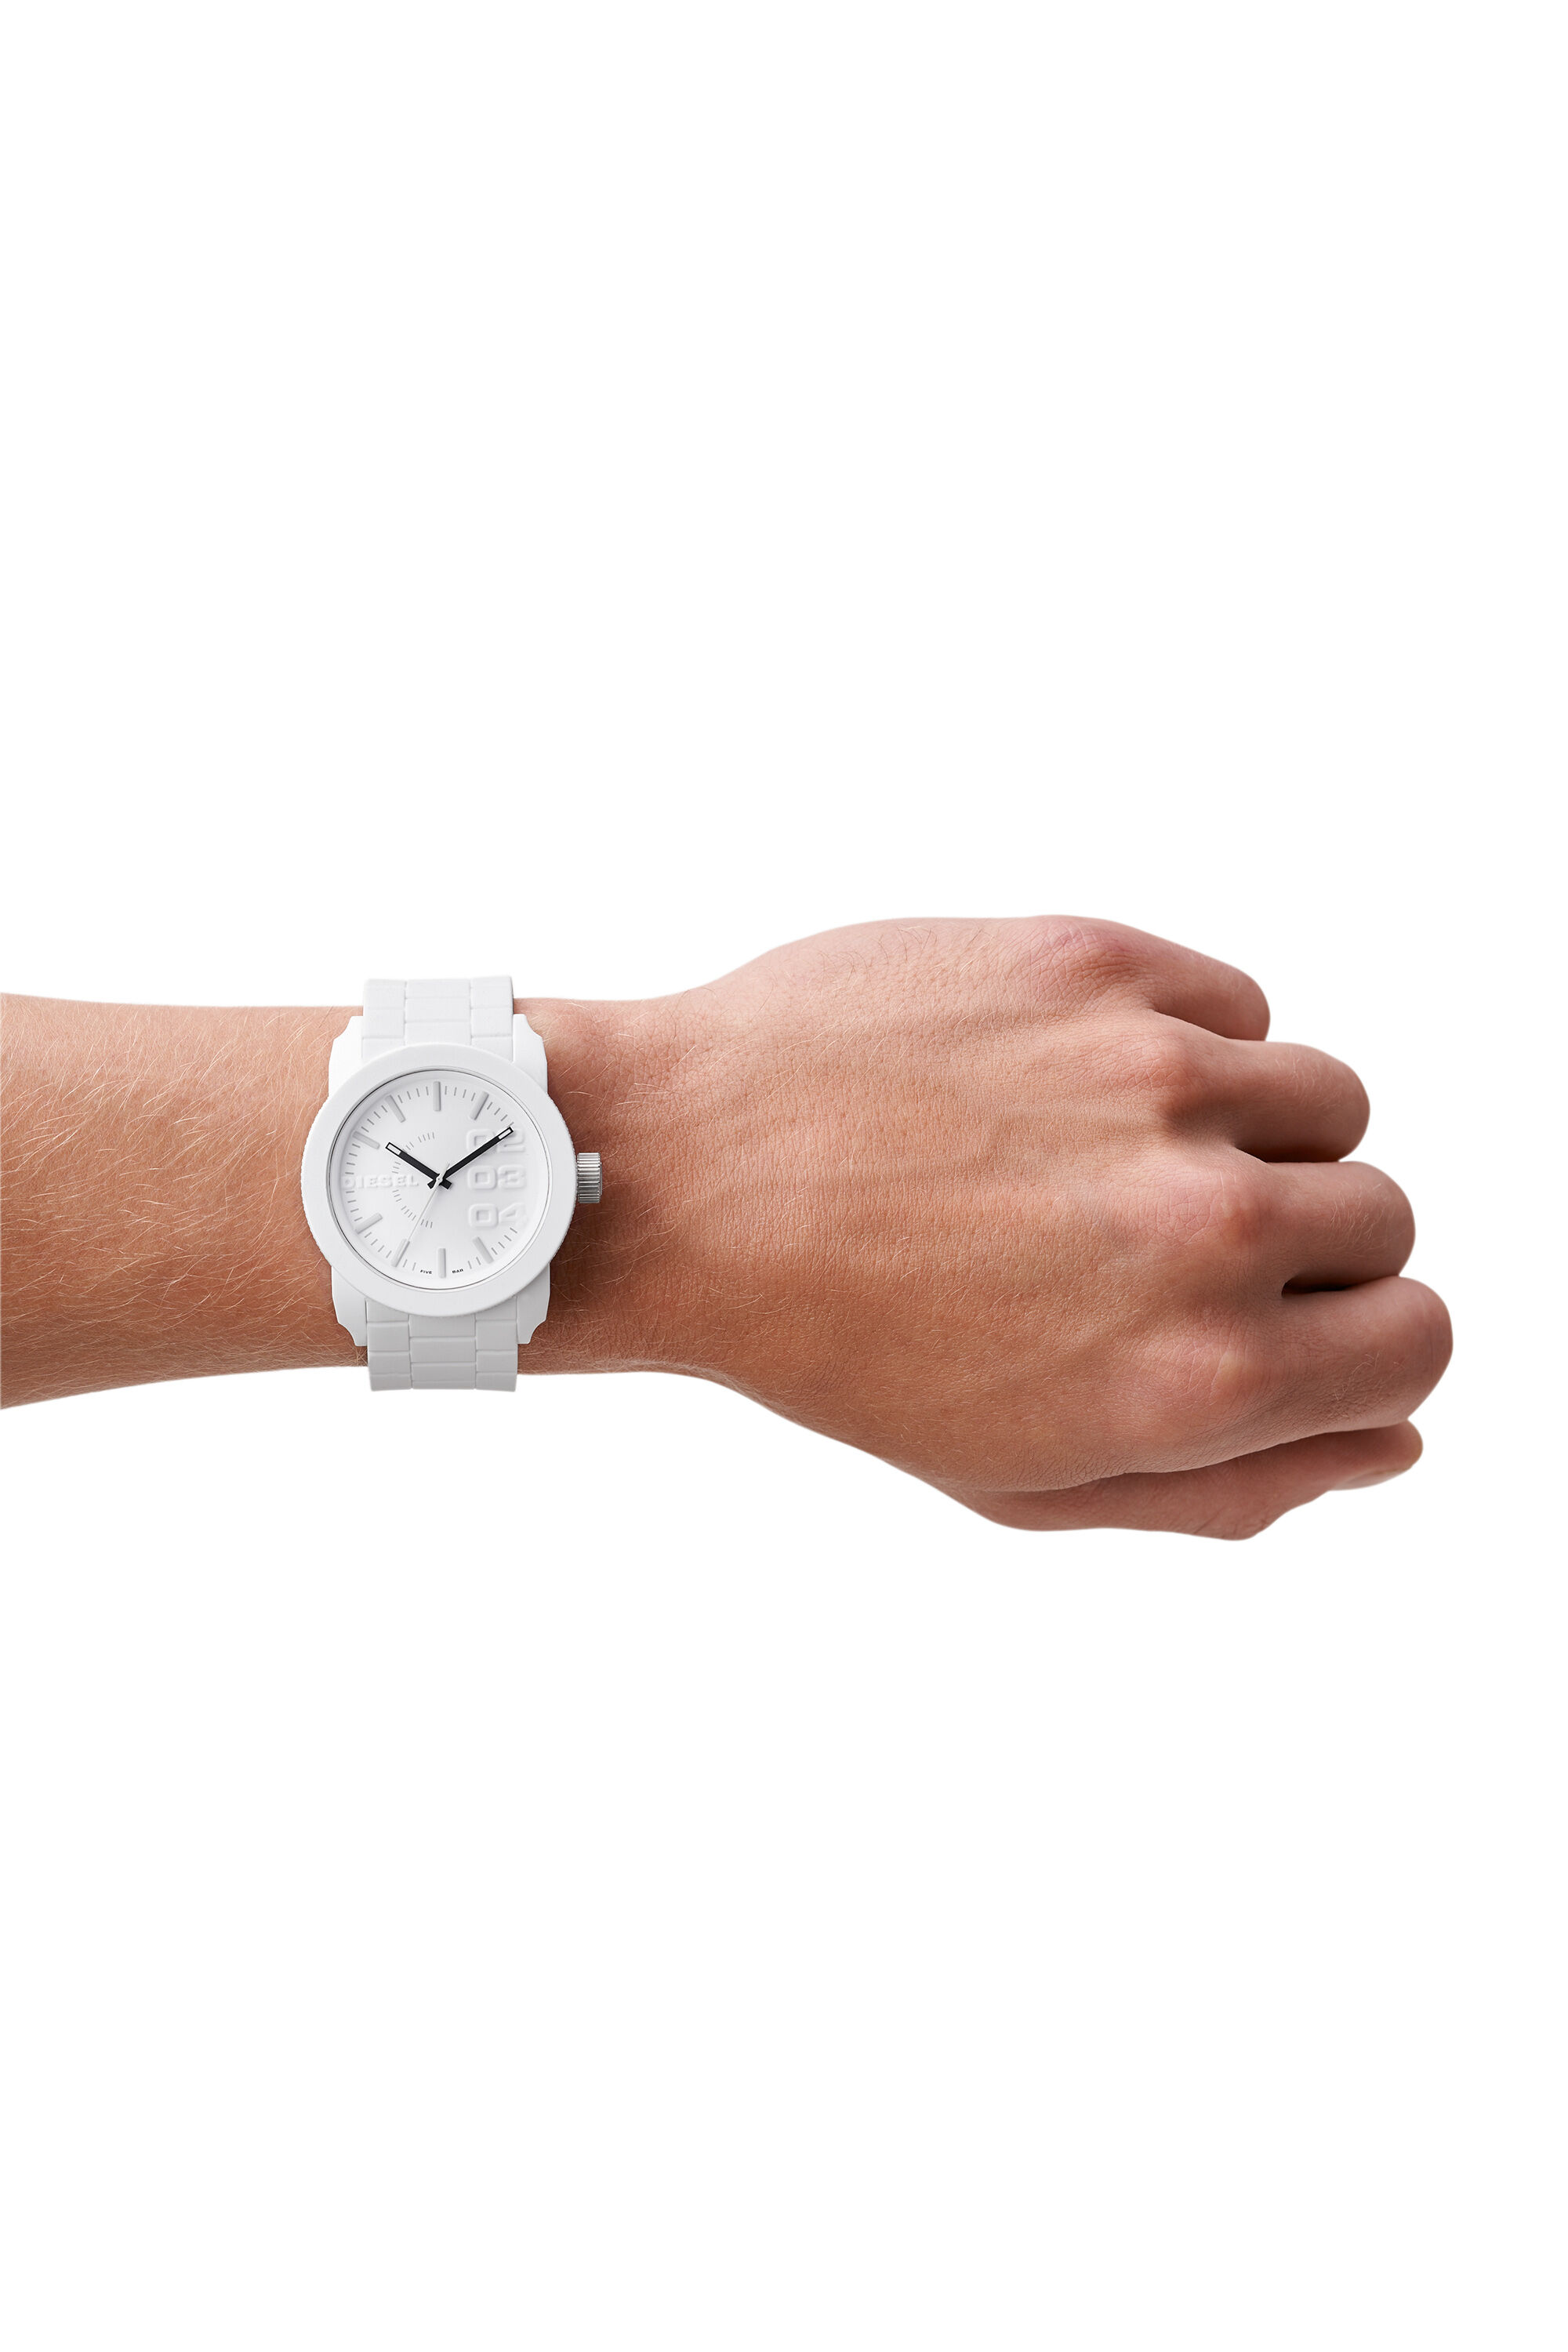 新品✨ディーゼル DIESEL フランチャイズ 腕時計 DZ1436 ホワイト - 時計